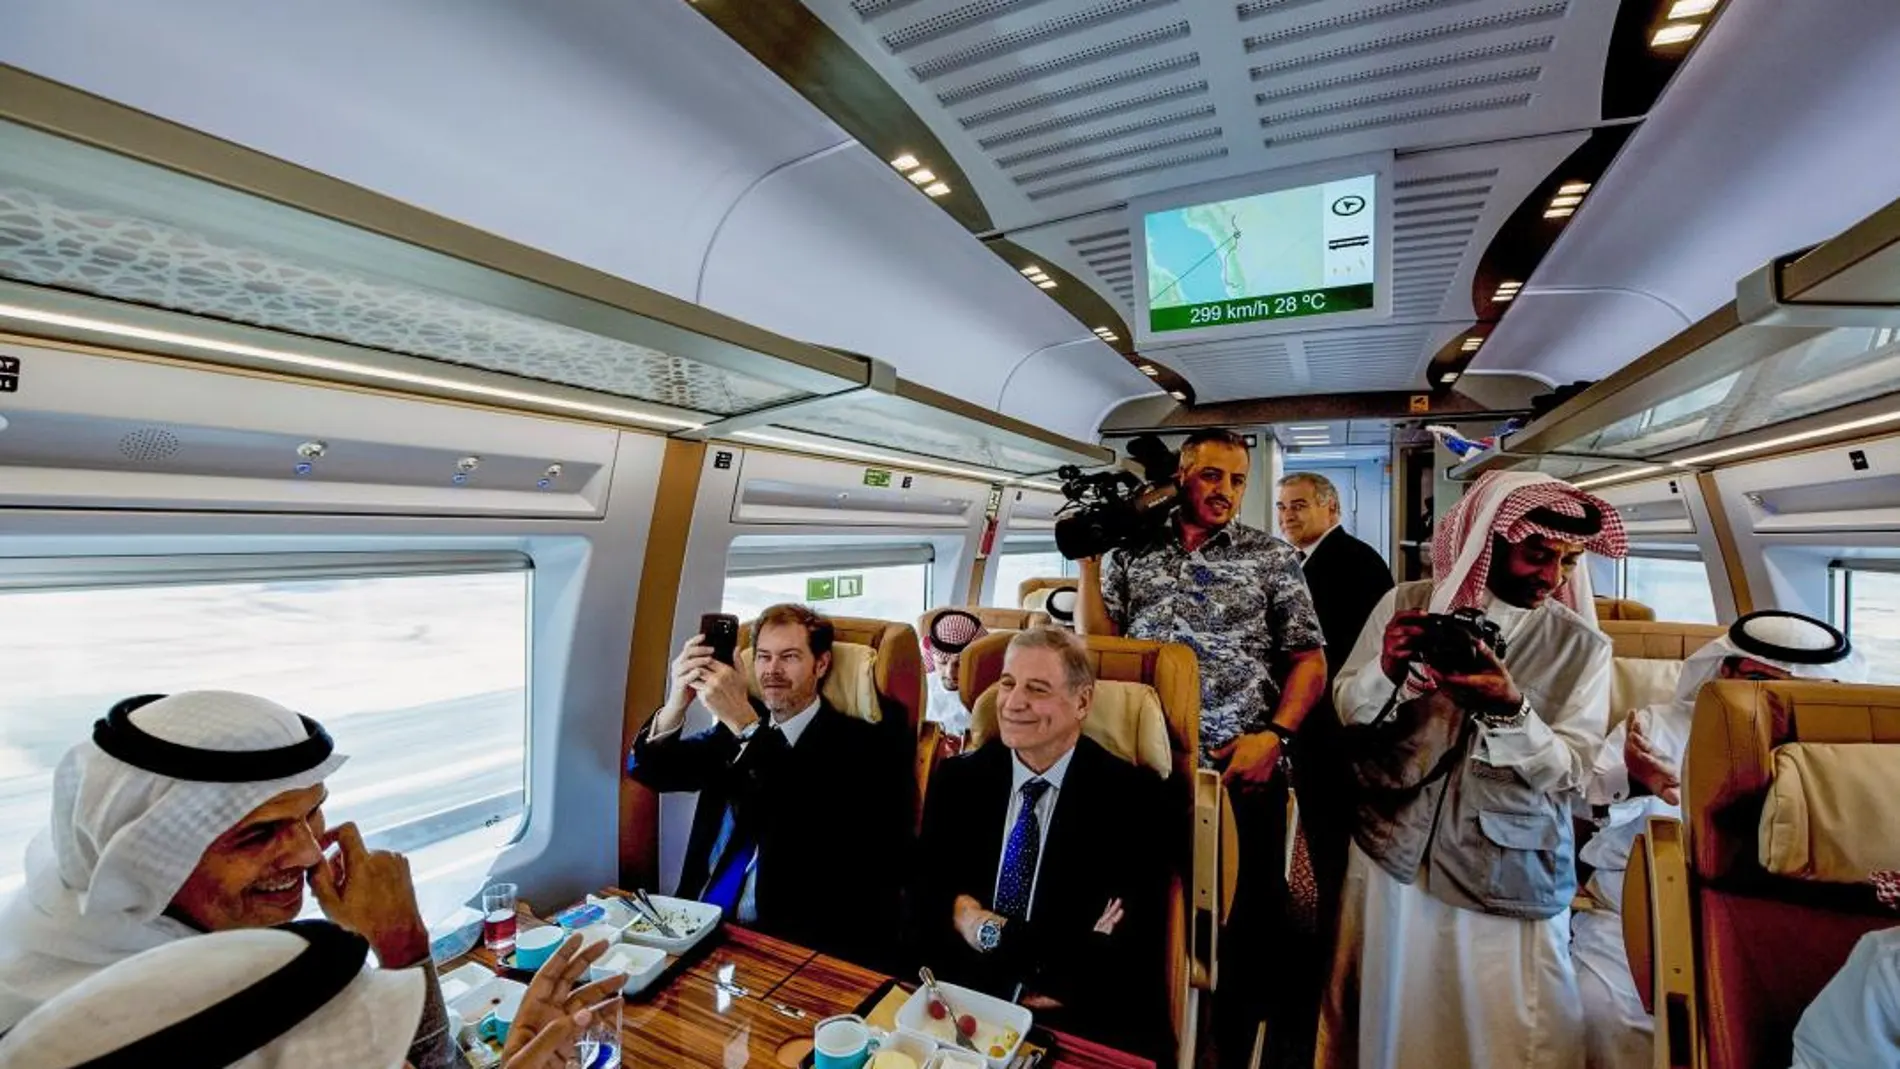 El tren superó los 300 kilómetros por hora en su primer viaje en pruebas entre La Meca y Medina